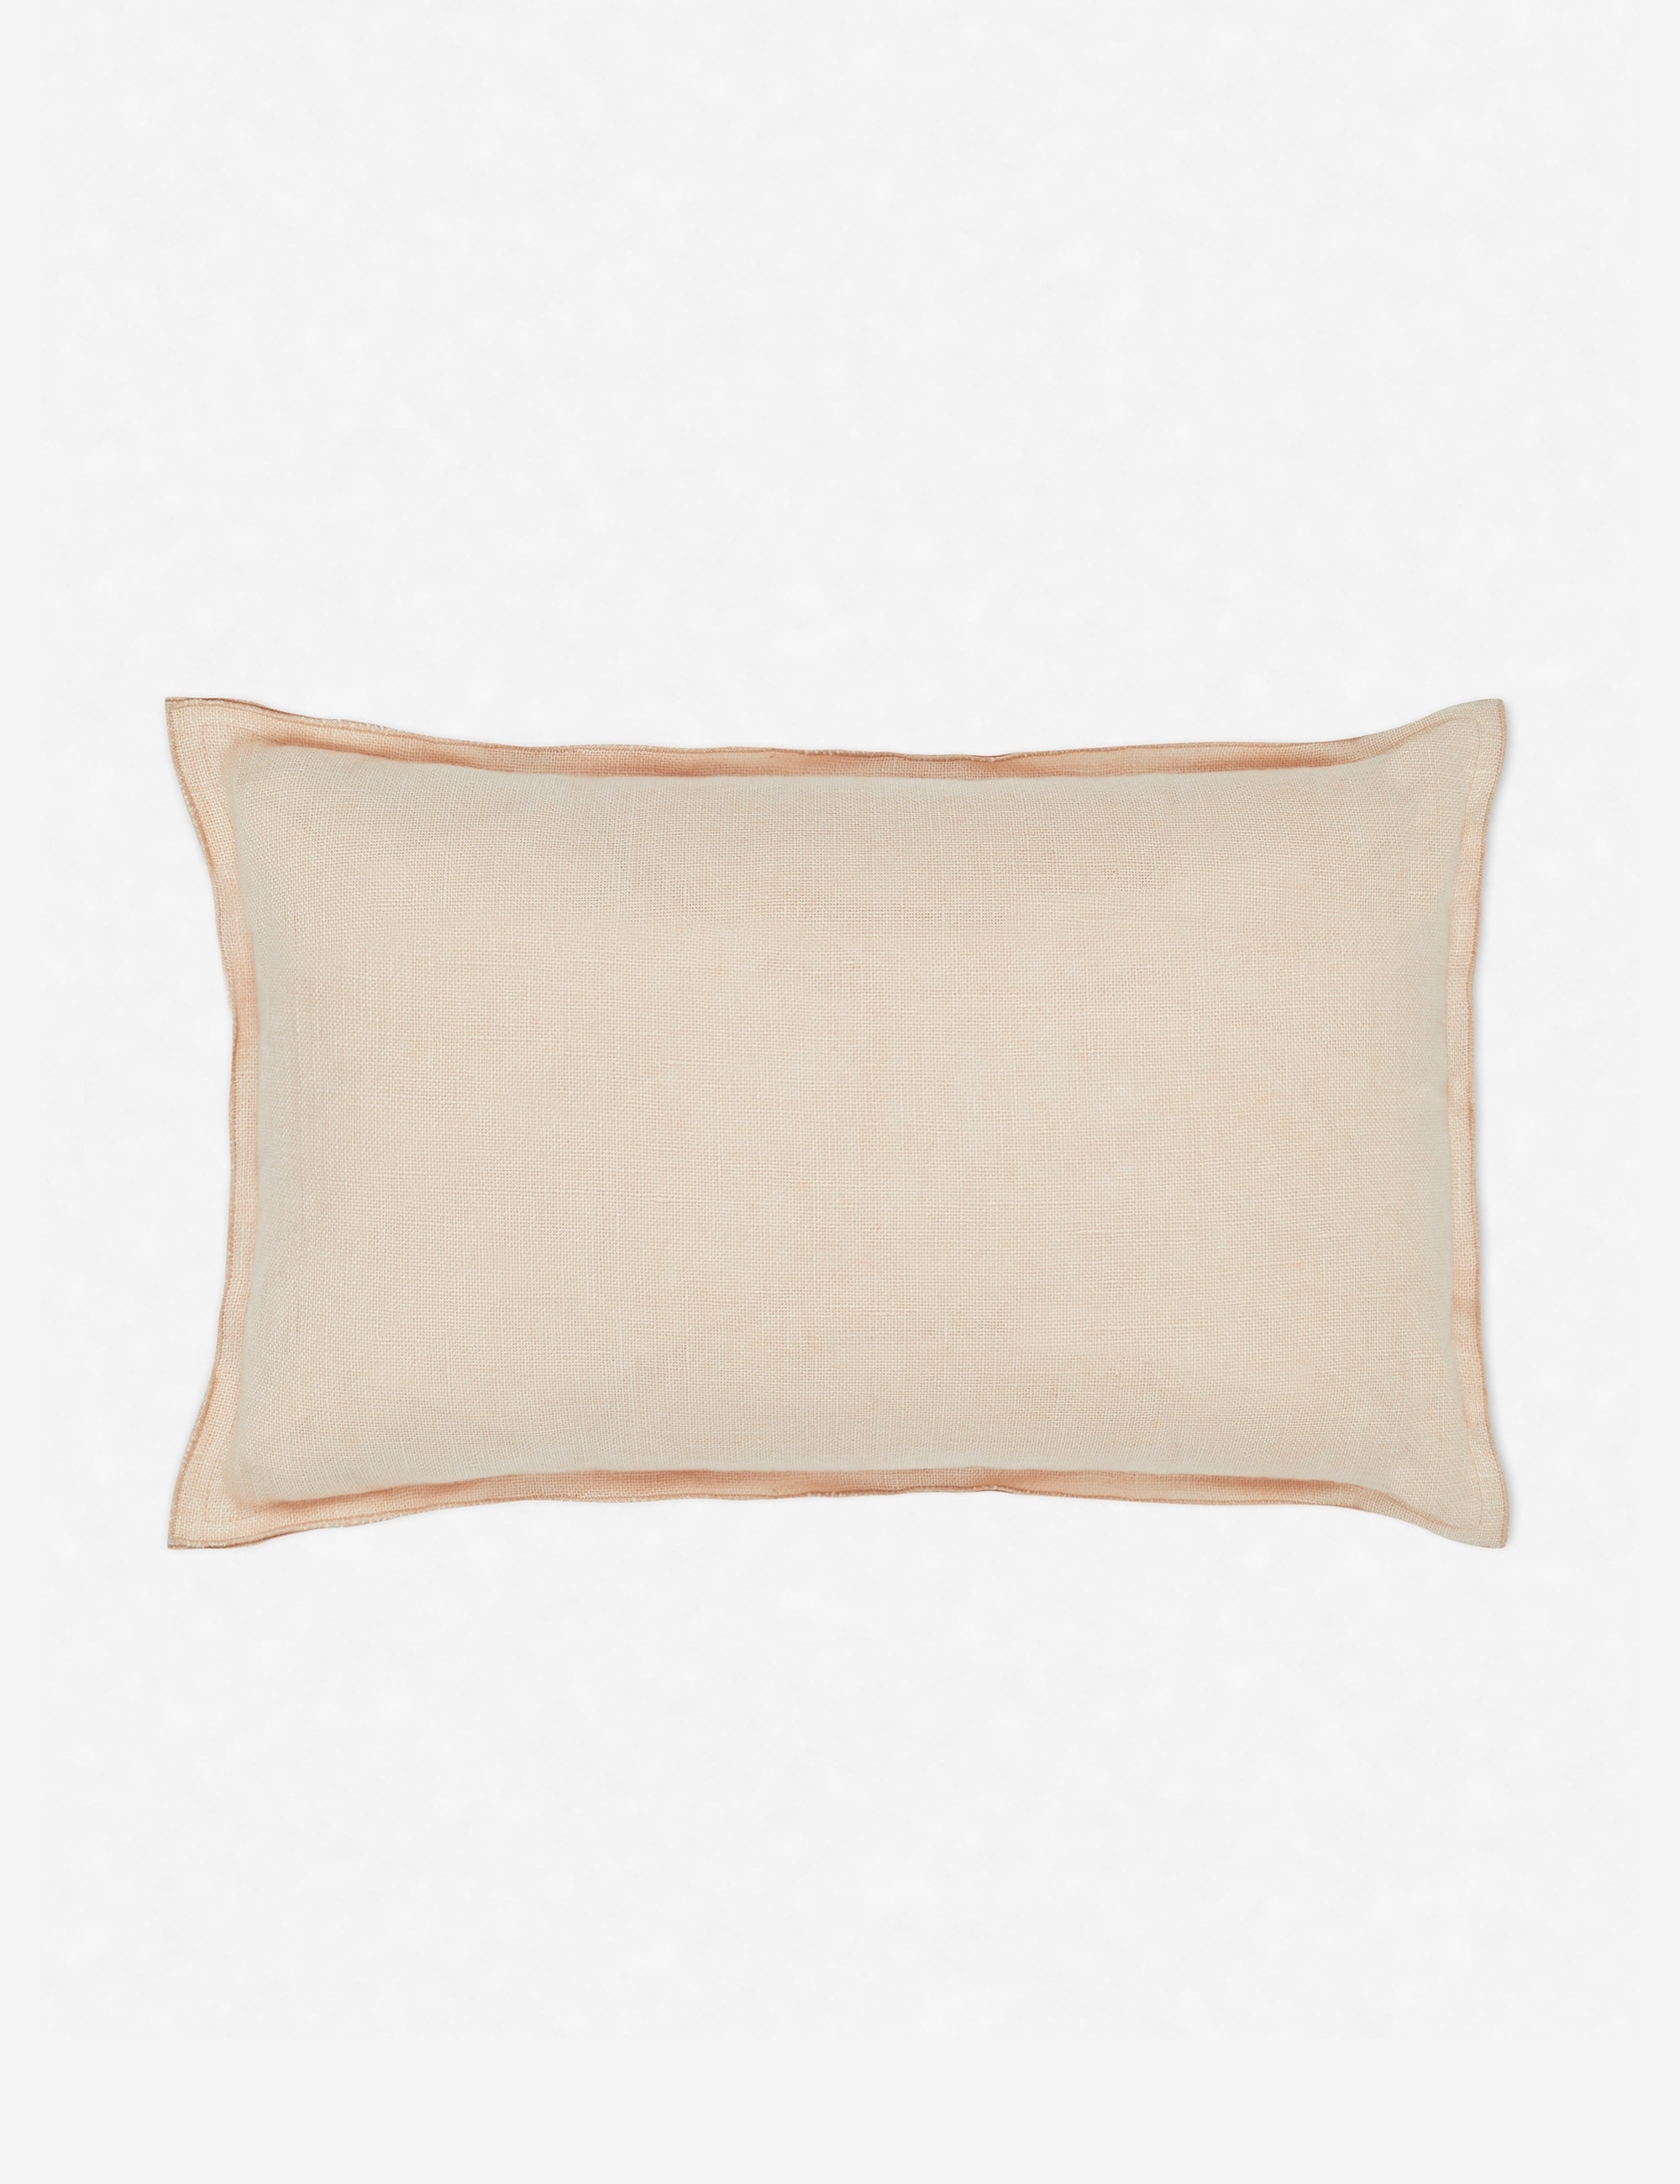 Arlo Linen Lumbar Pillow, Blush - Image 2